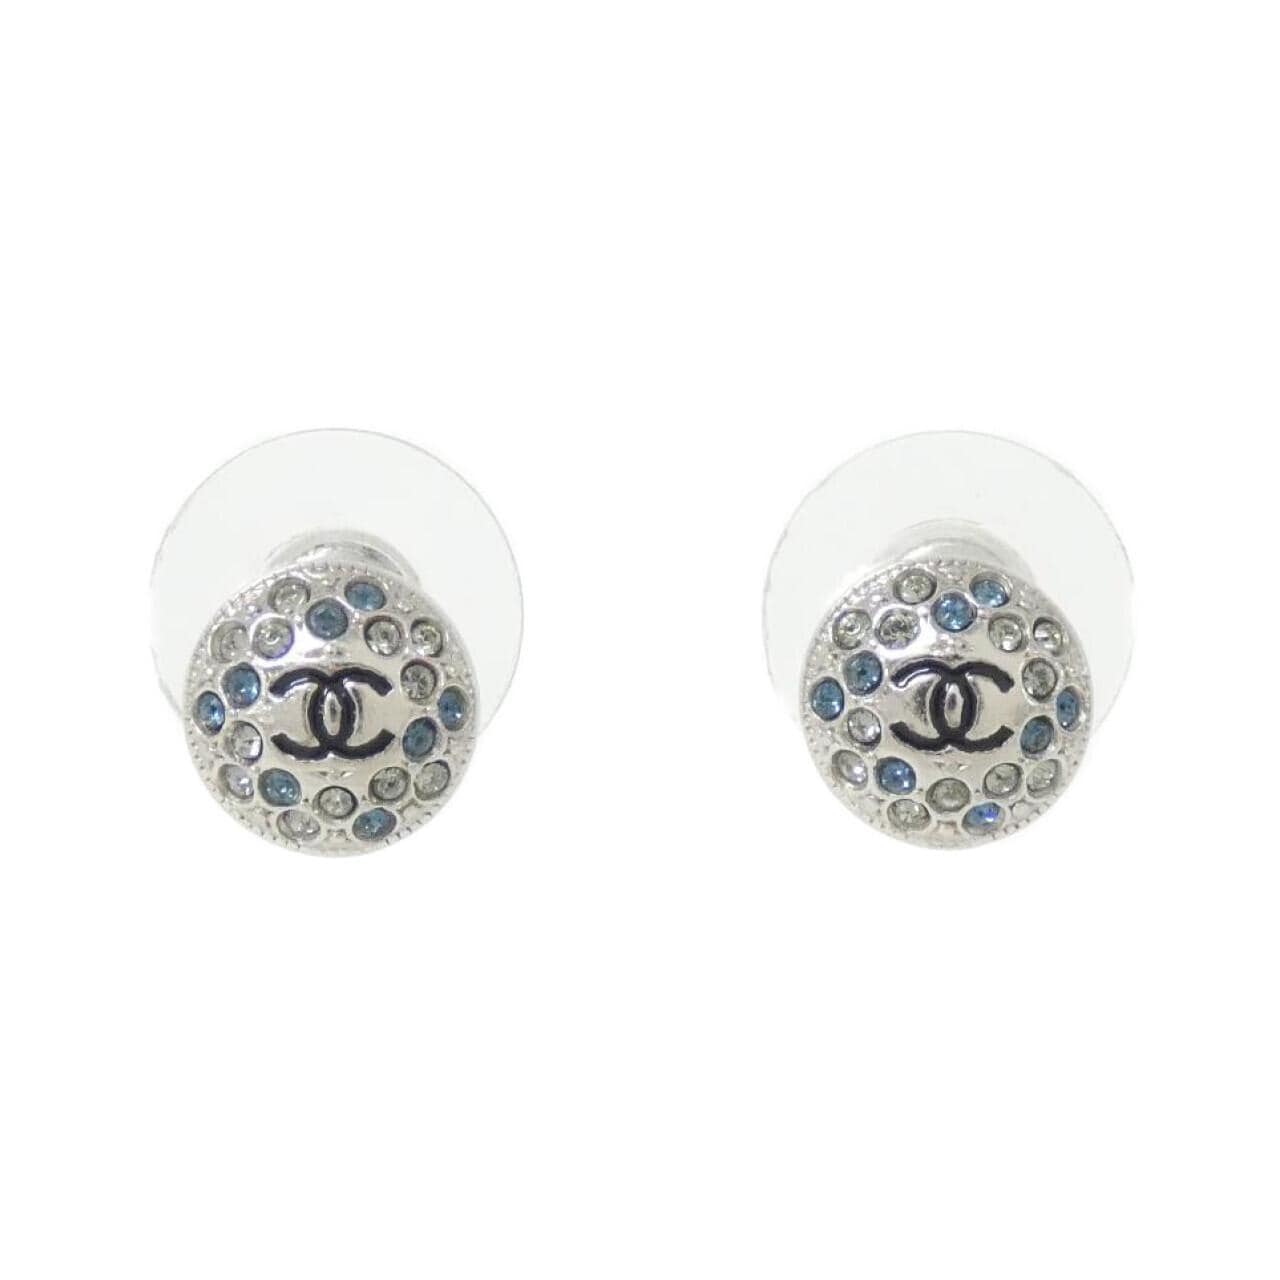 CHANEL 95448 earrings